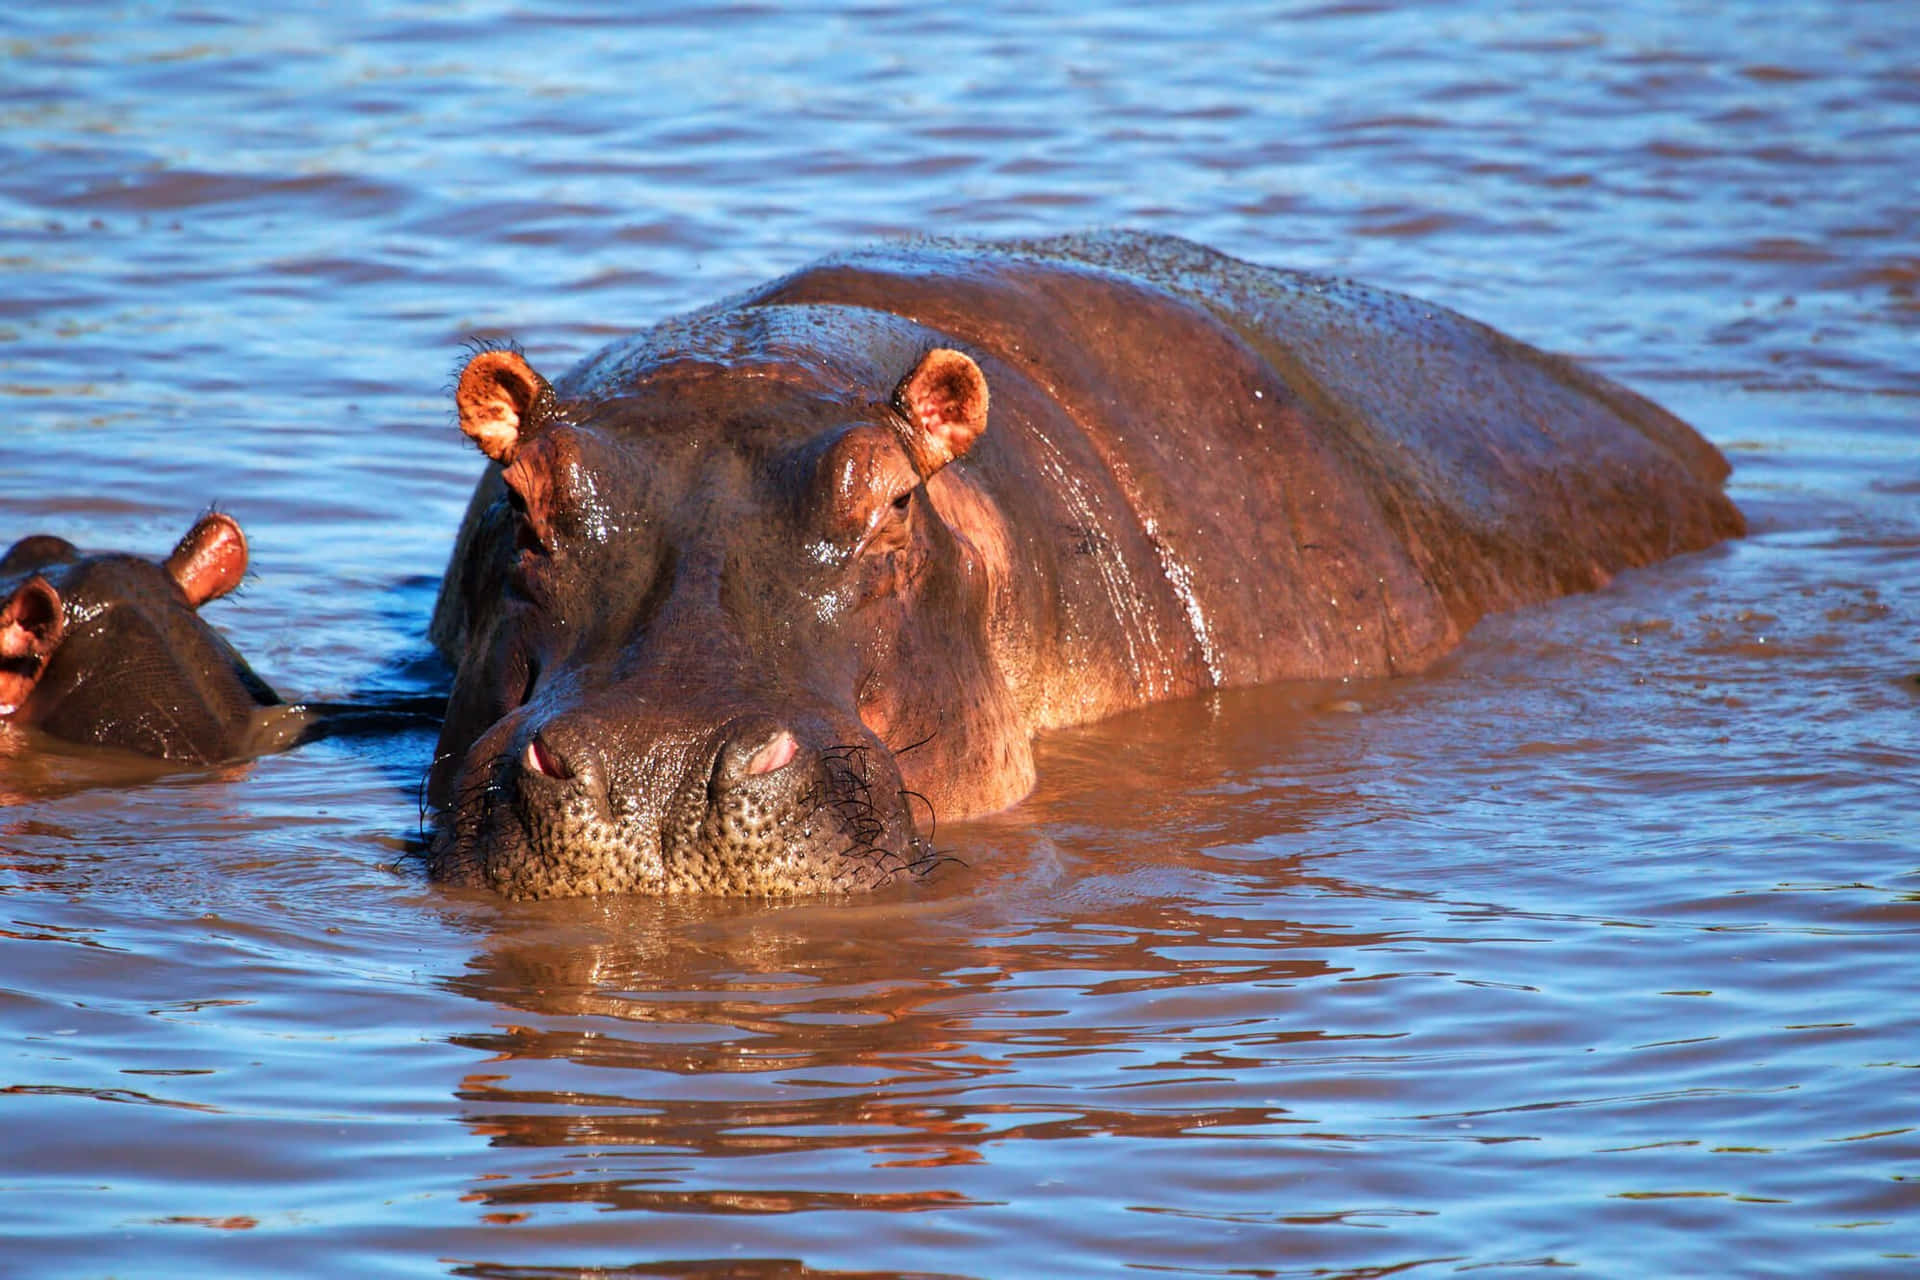 Cute Hippo Enjoying a Mud Bath